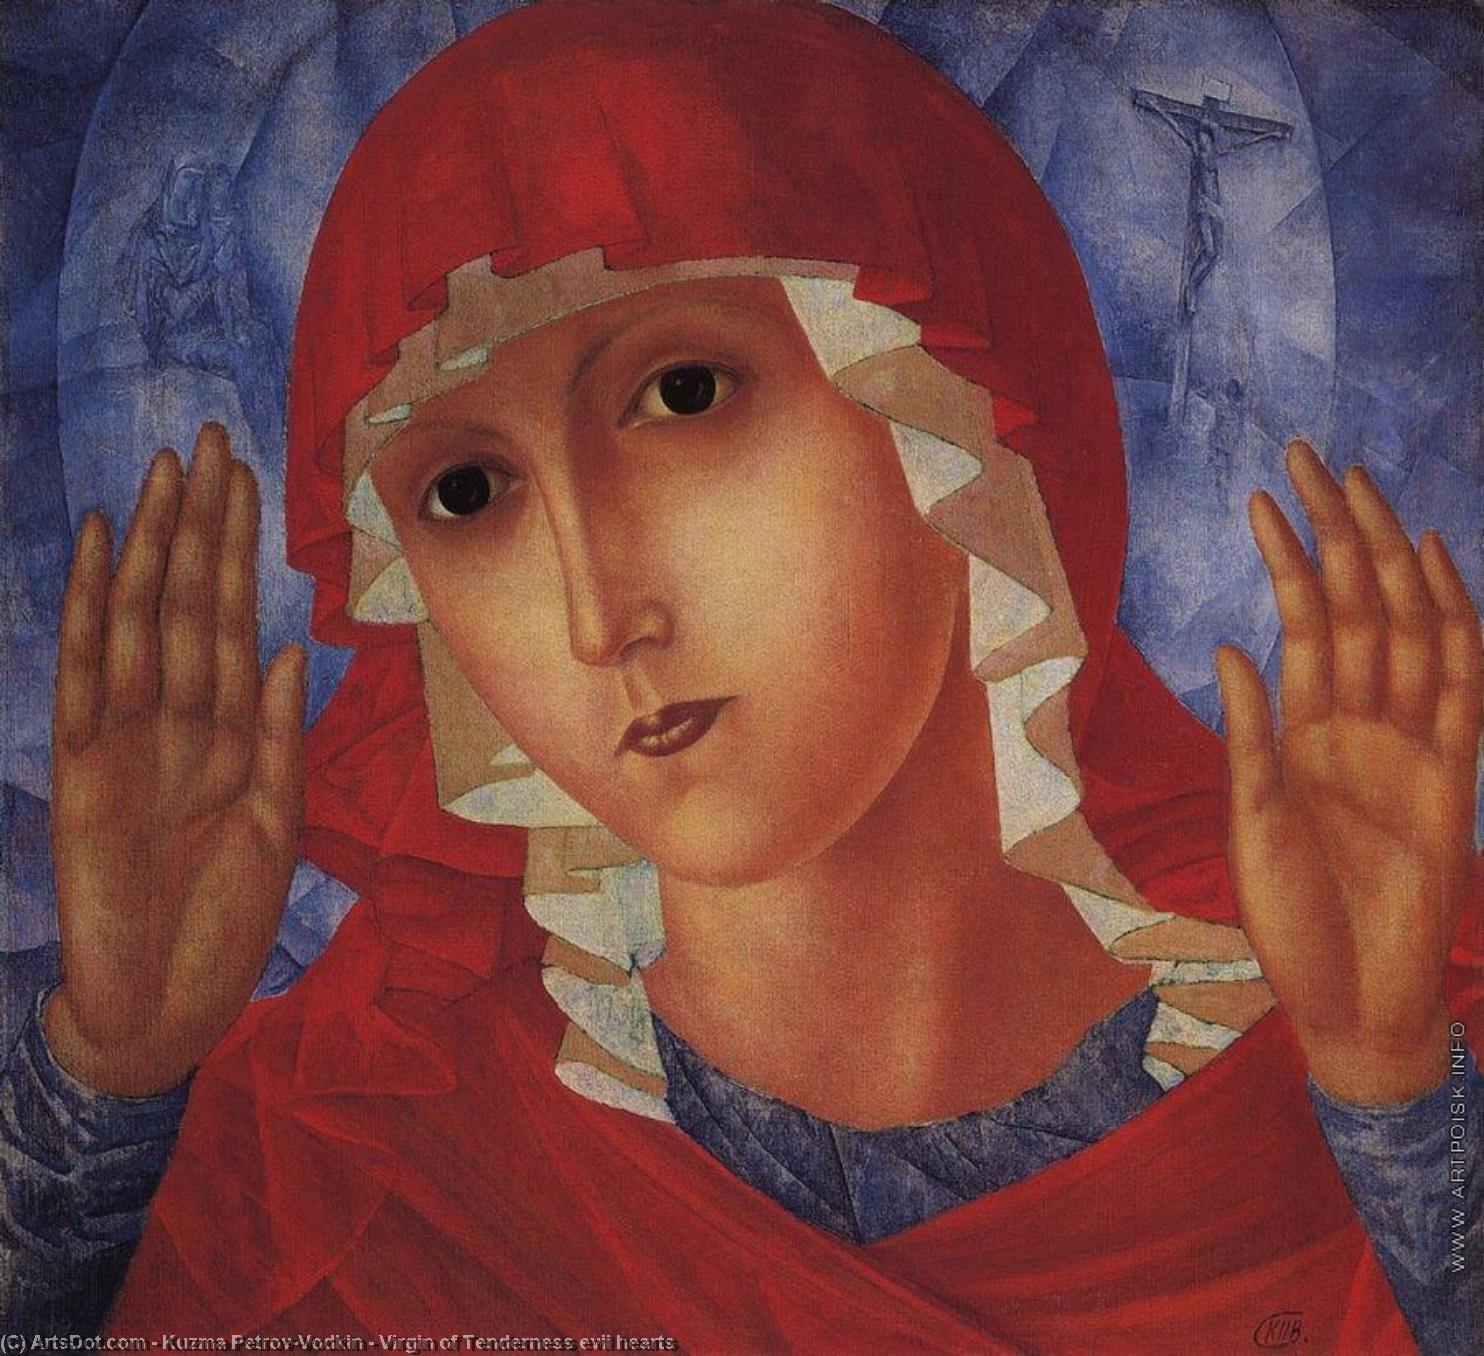 WikiOO.org - Енциклопедия за изящни изкуства - Живопис, Произведения на изкуството Kuzma Petrov-Vodkin - Virgin of Tenderness evil hearts